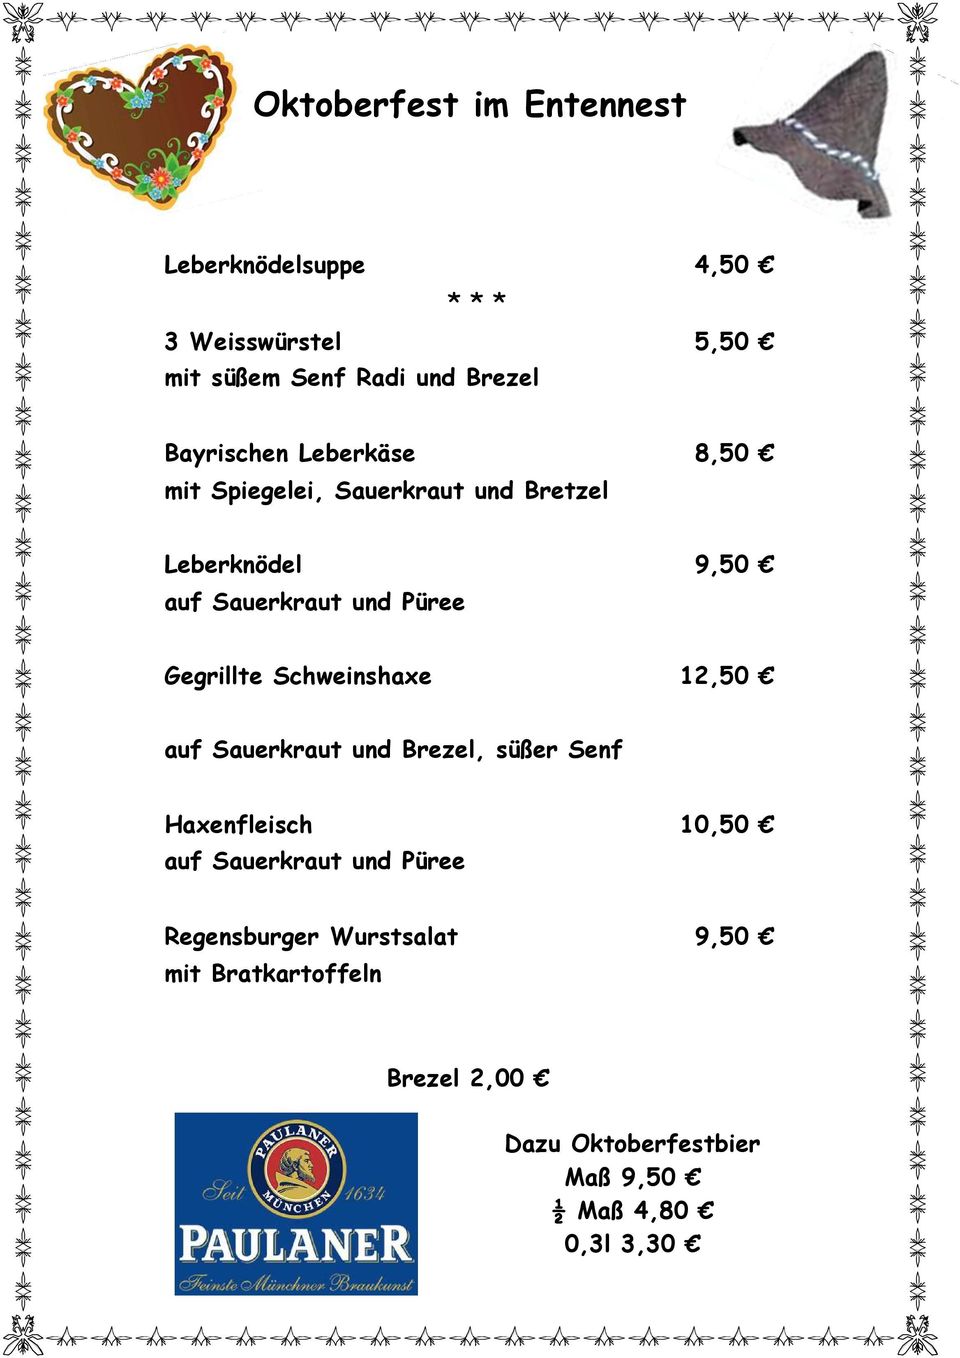 Gegrillte Schweinshaxe 12,50 auf Sauerkraut und Brezel, süßer Senf Haxenfleisch 10,50 auf Sauerkraut und